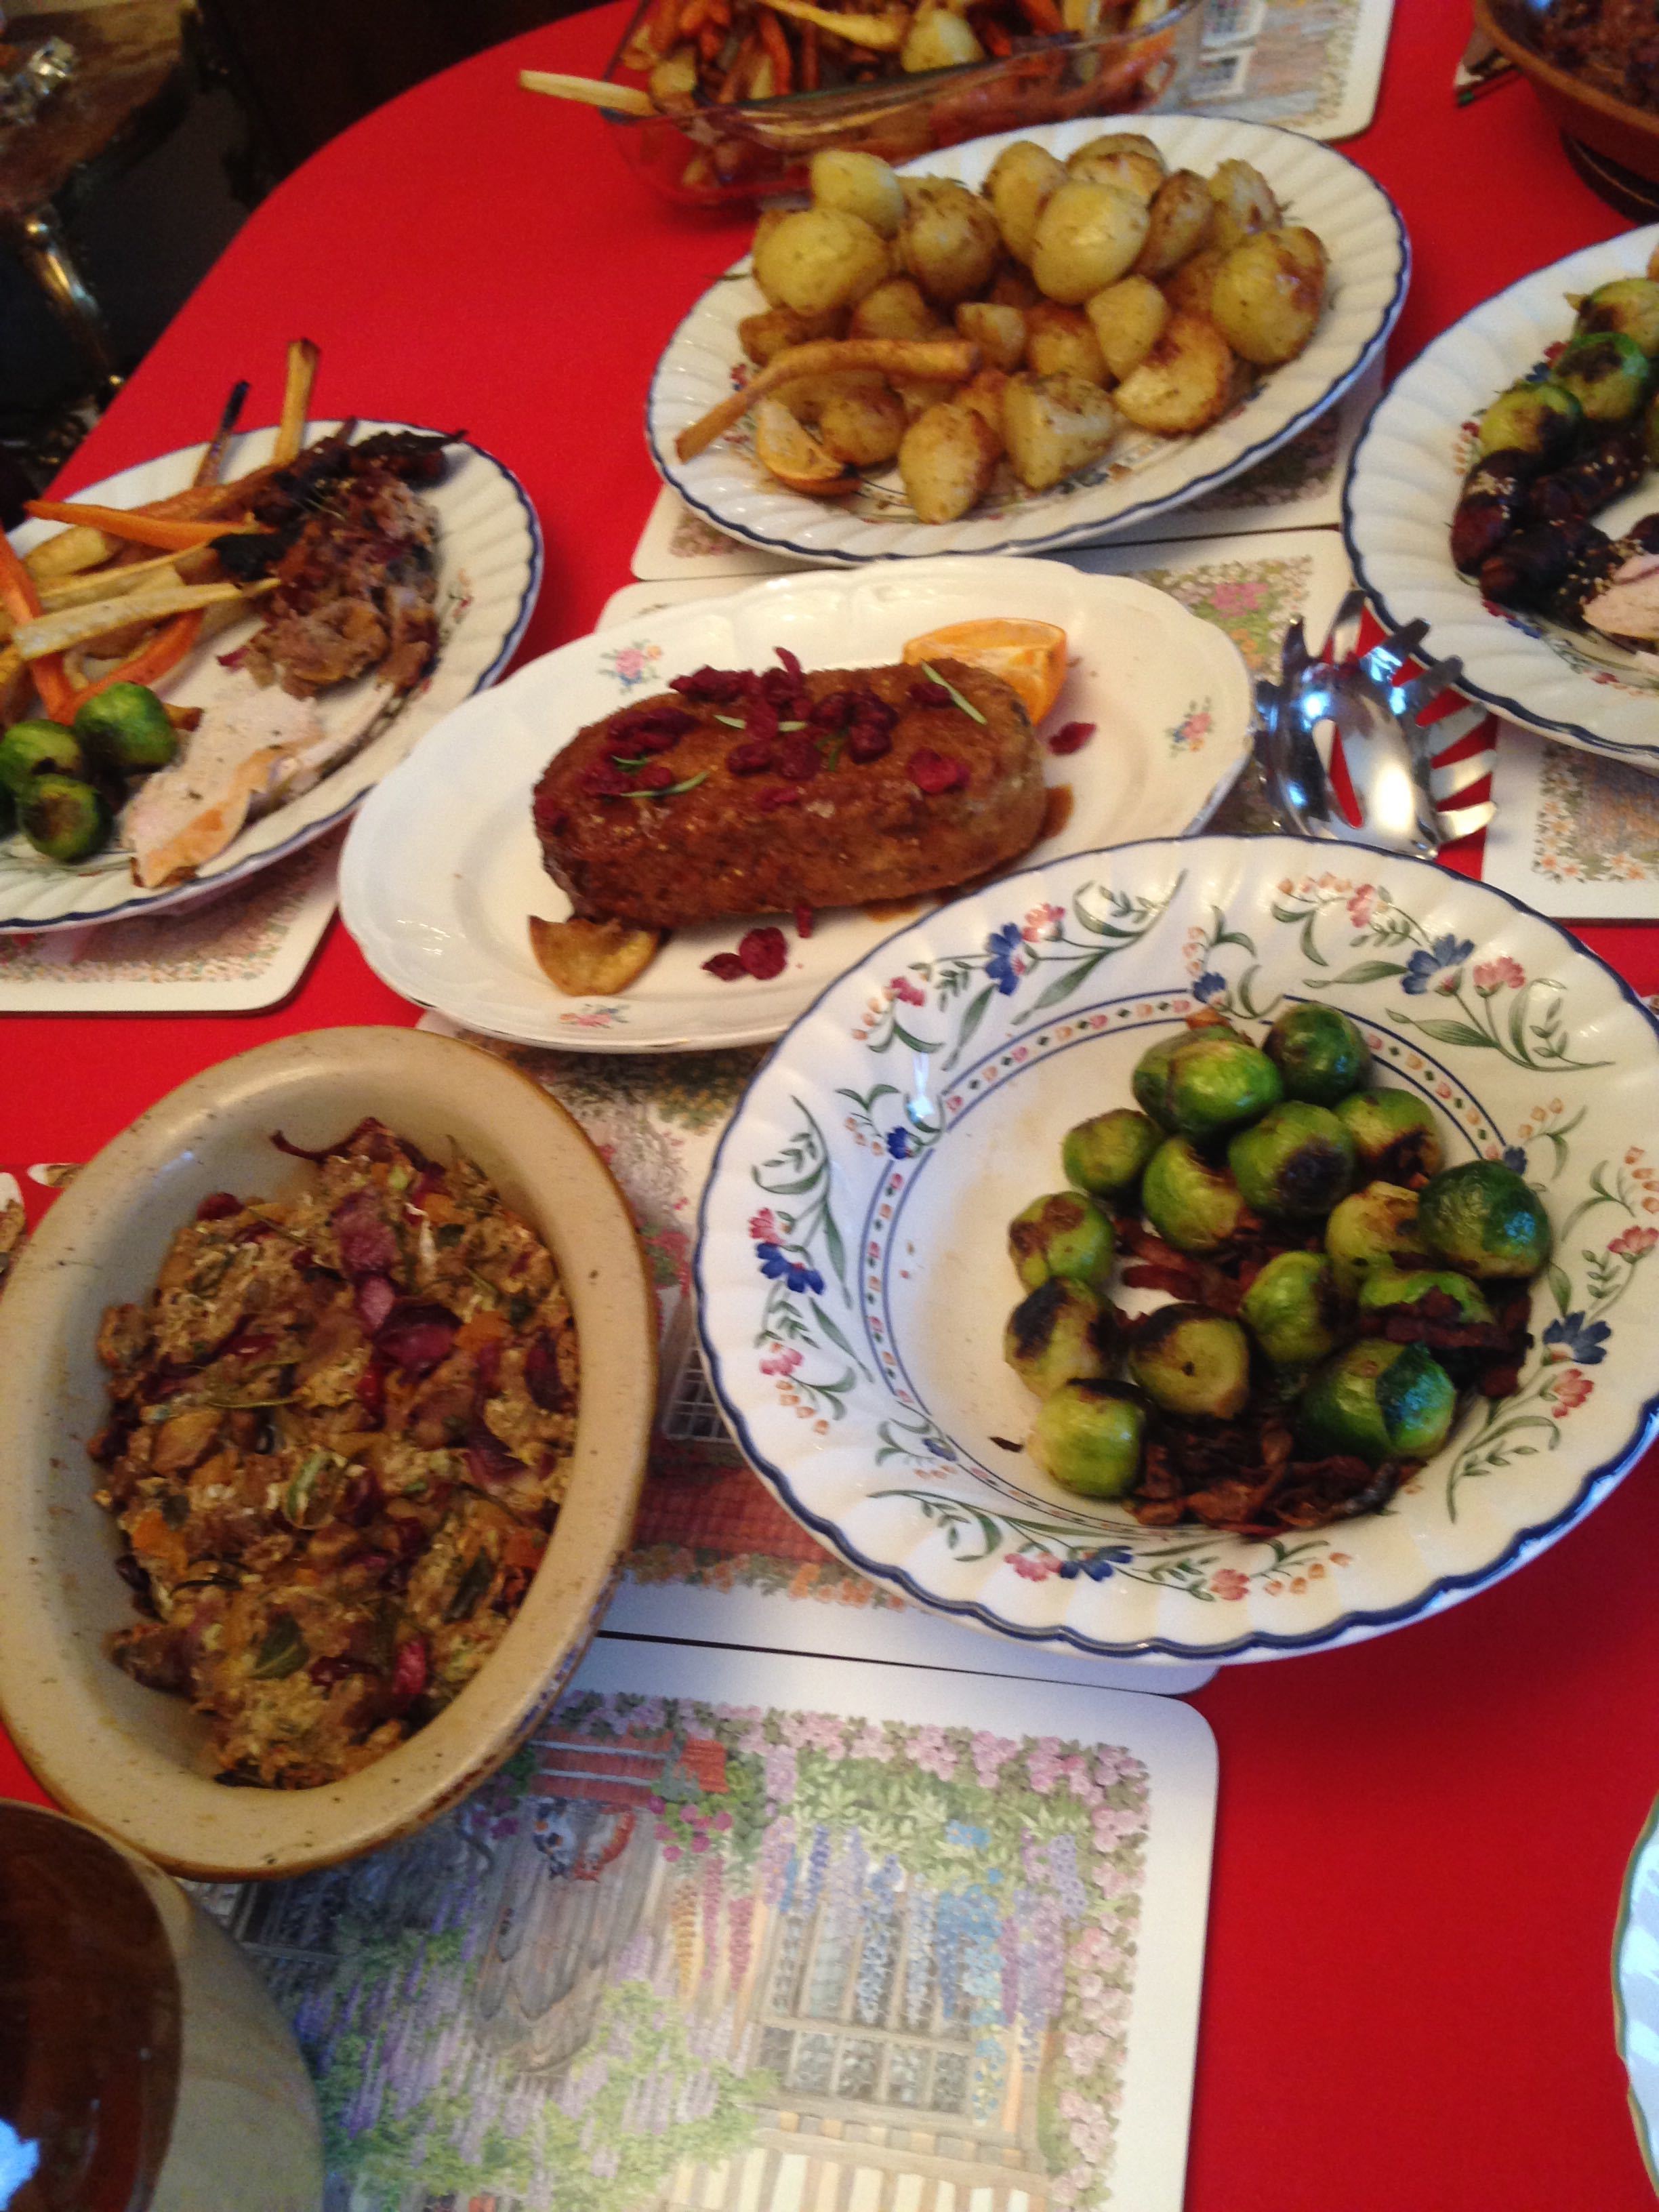 English Christmas Dinner Recipes - 20 Recipes for a ...